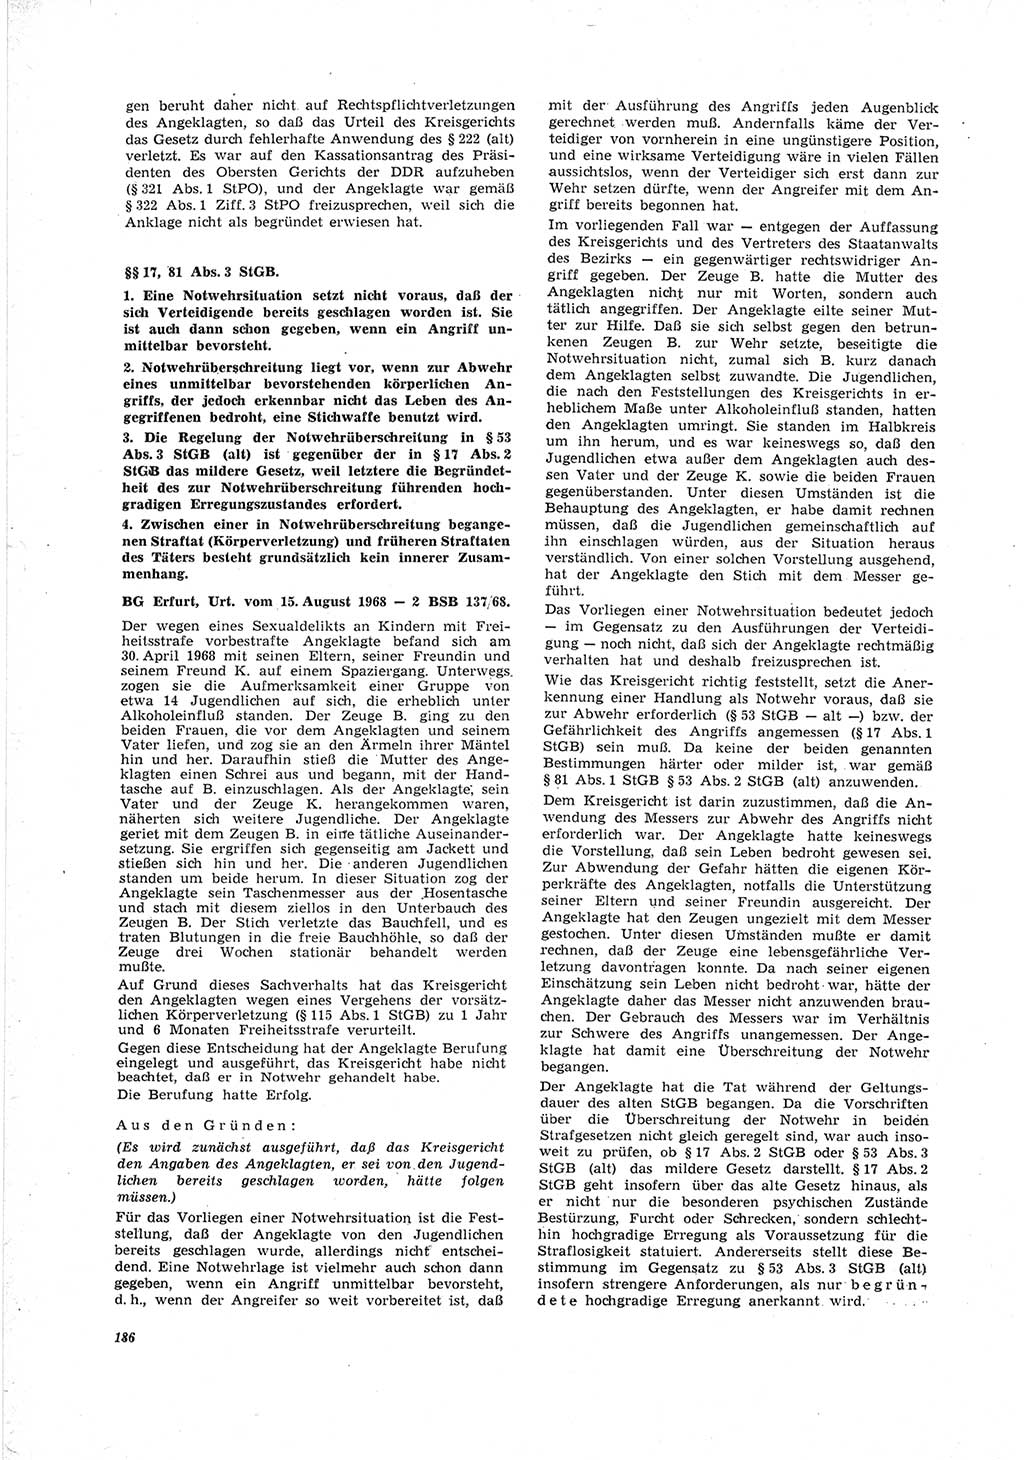 Neue Justiz (NJ), Zeitschrift für Recht und Rechtswissenschaft [Deutsche Demokratische Republik (DDR)], 23. Jahrgang 1969, Seite 186 (NJ DDR 1969, S. 186)